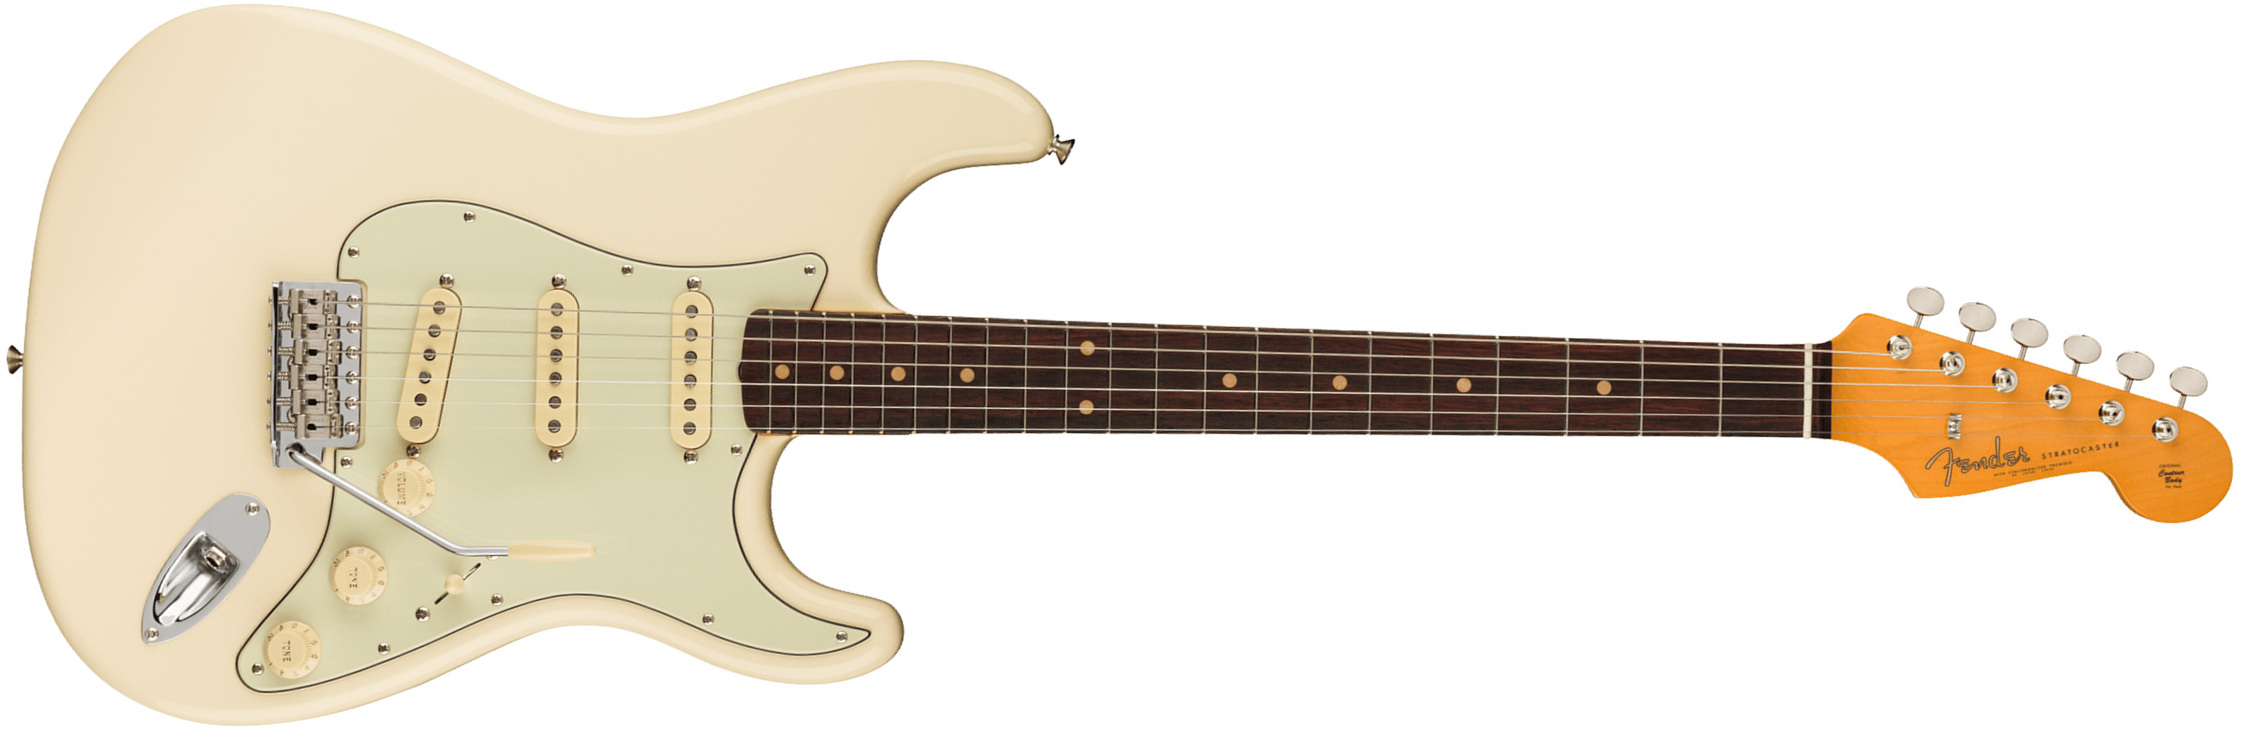 Fender Strat 1961 American Vintage Ii Usa 3s Trem Rw - Olympic White - Elektrische gitaar in Str-vorm - Main picture